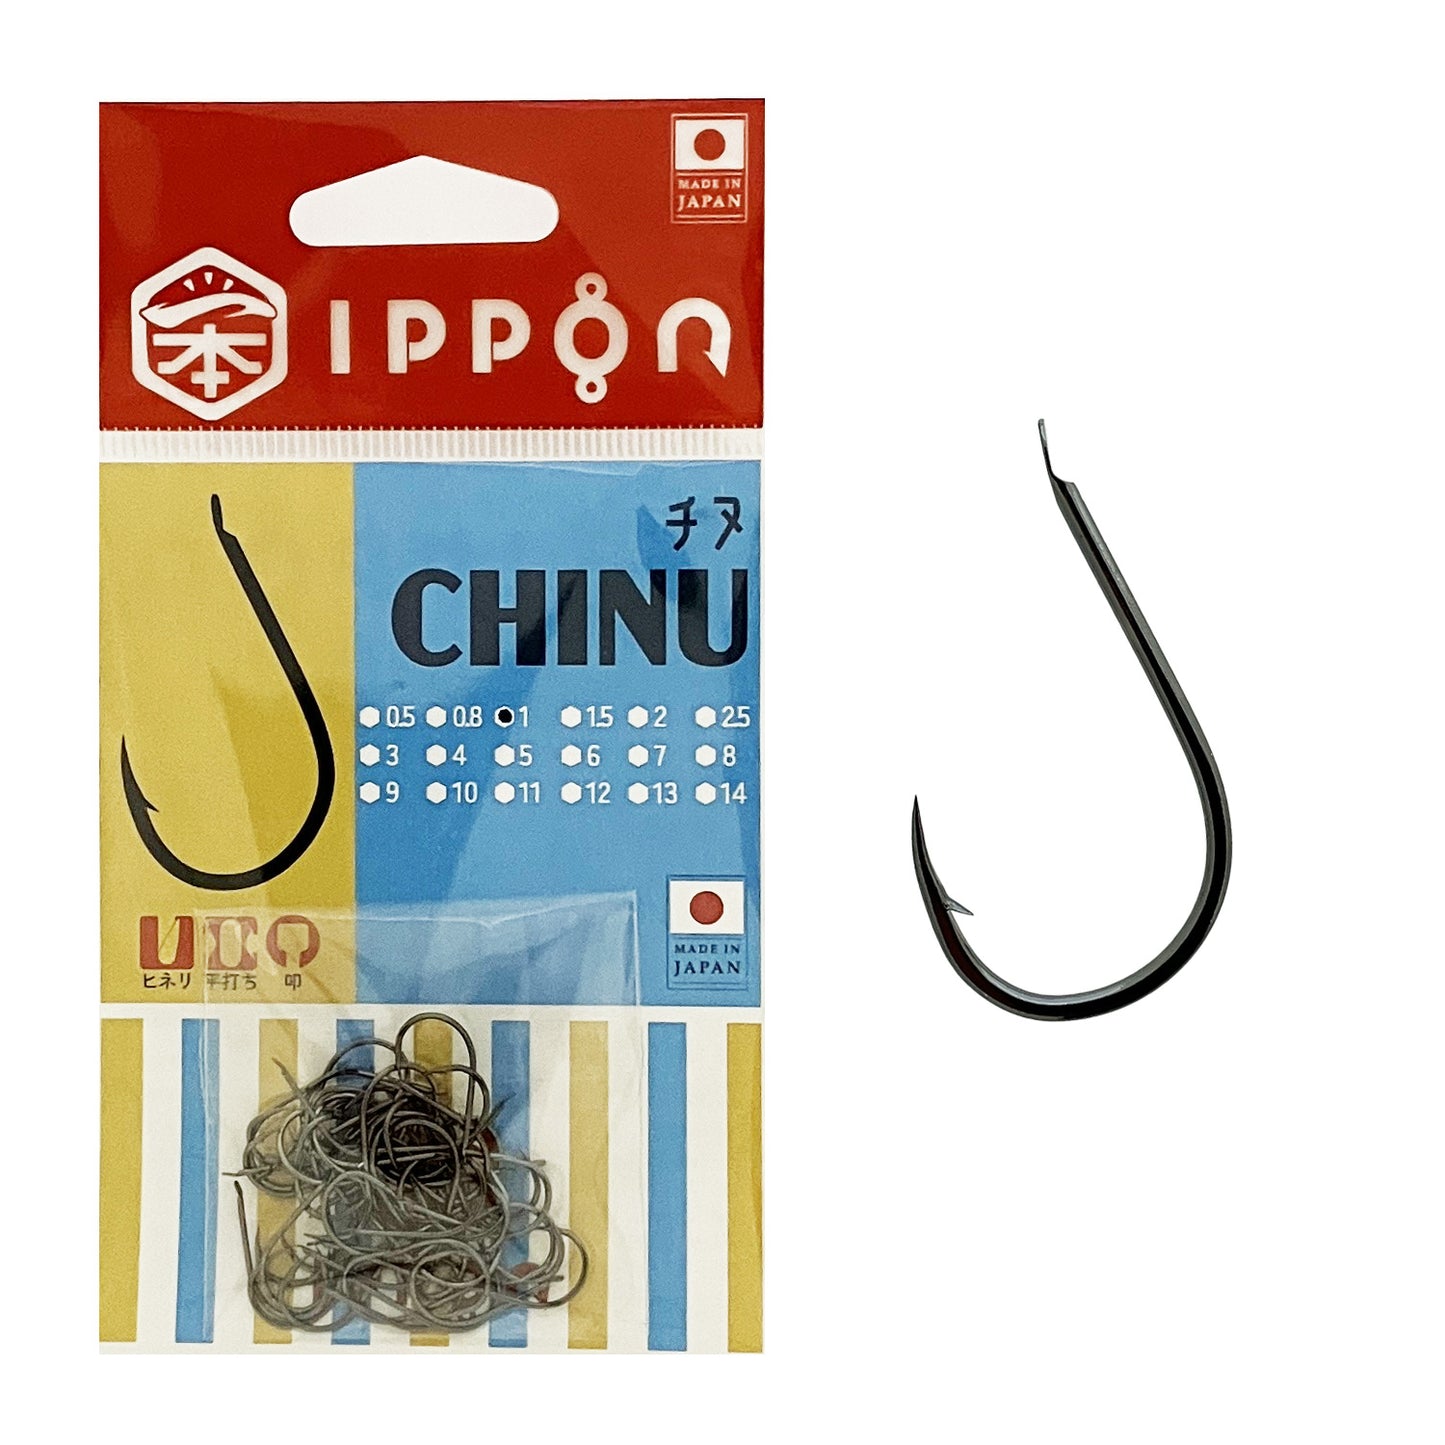 IPPON (一本) チヌ ブラックコート 日本製